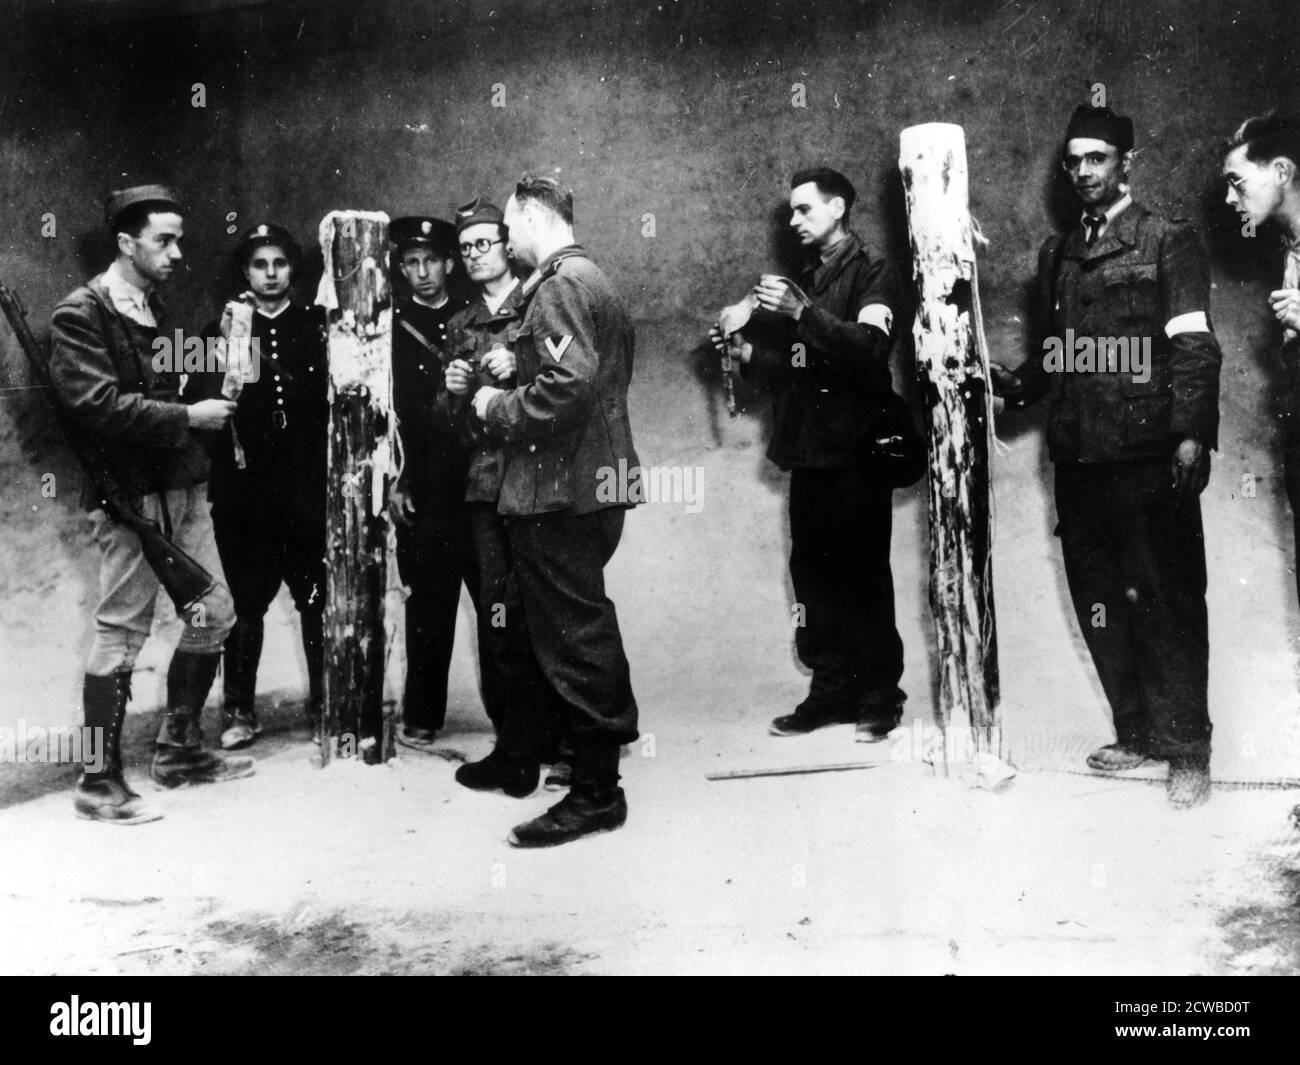 Postes d'exécution utilisés par les nazis dans le sous-sol du ministère de l'Air pendant l'occupation, Paris, 1944. Le photographe est inconnu. Banque D'Images